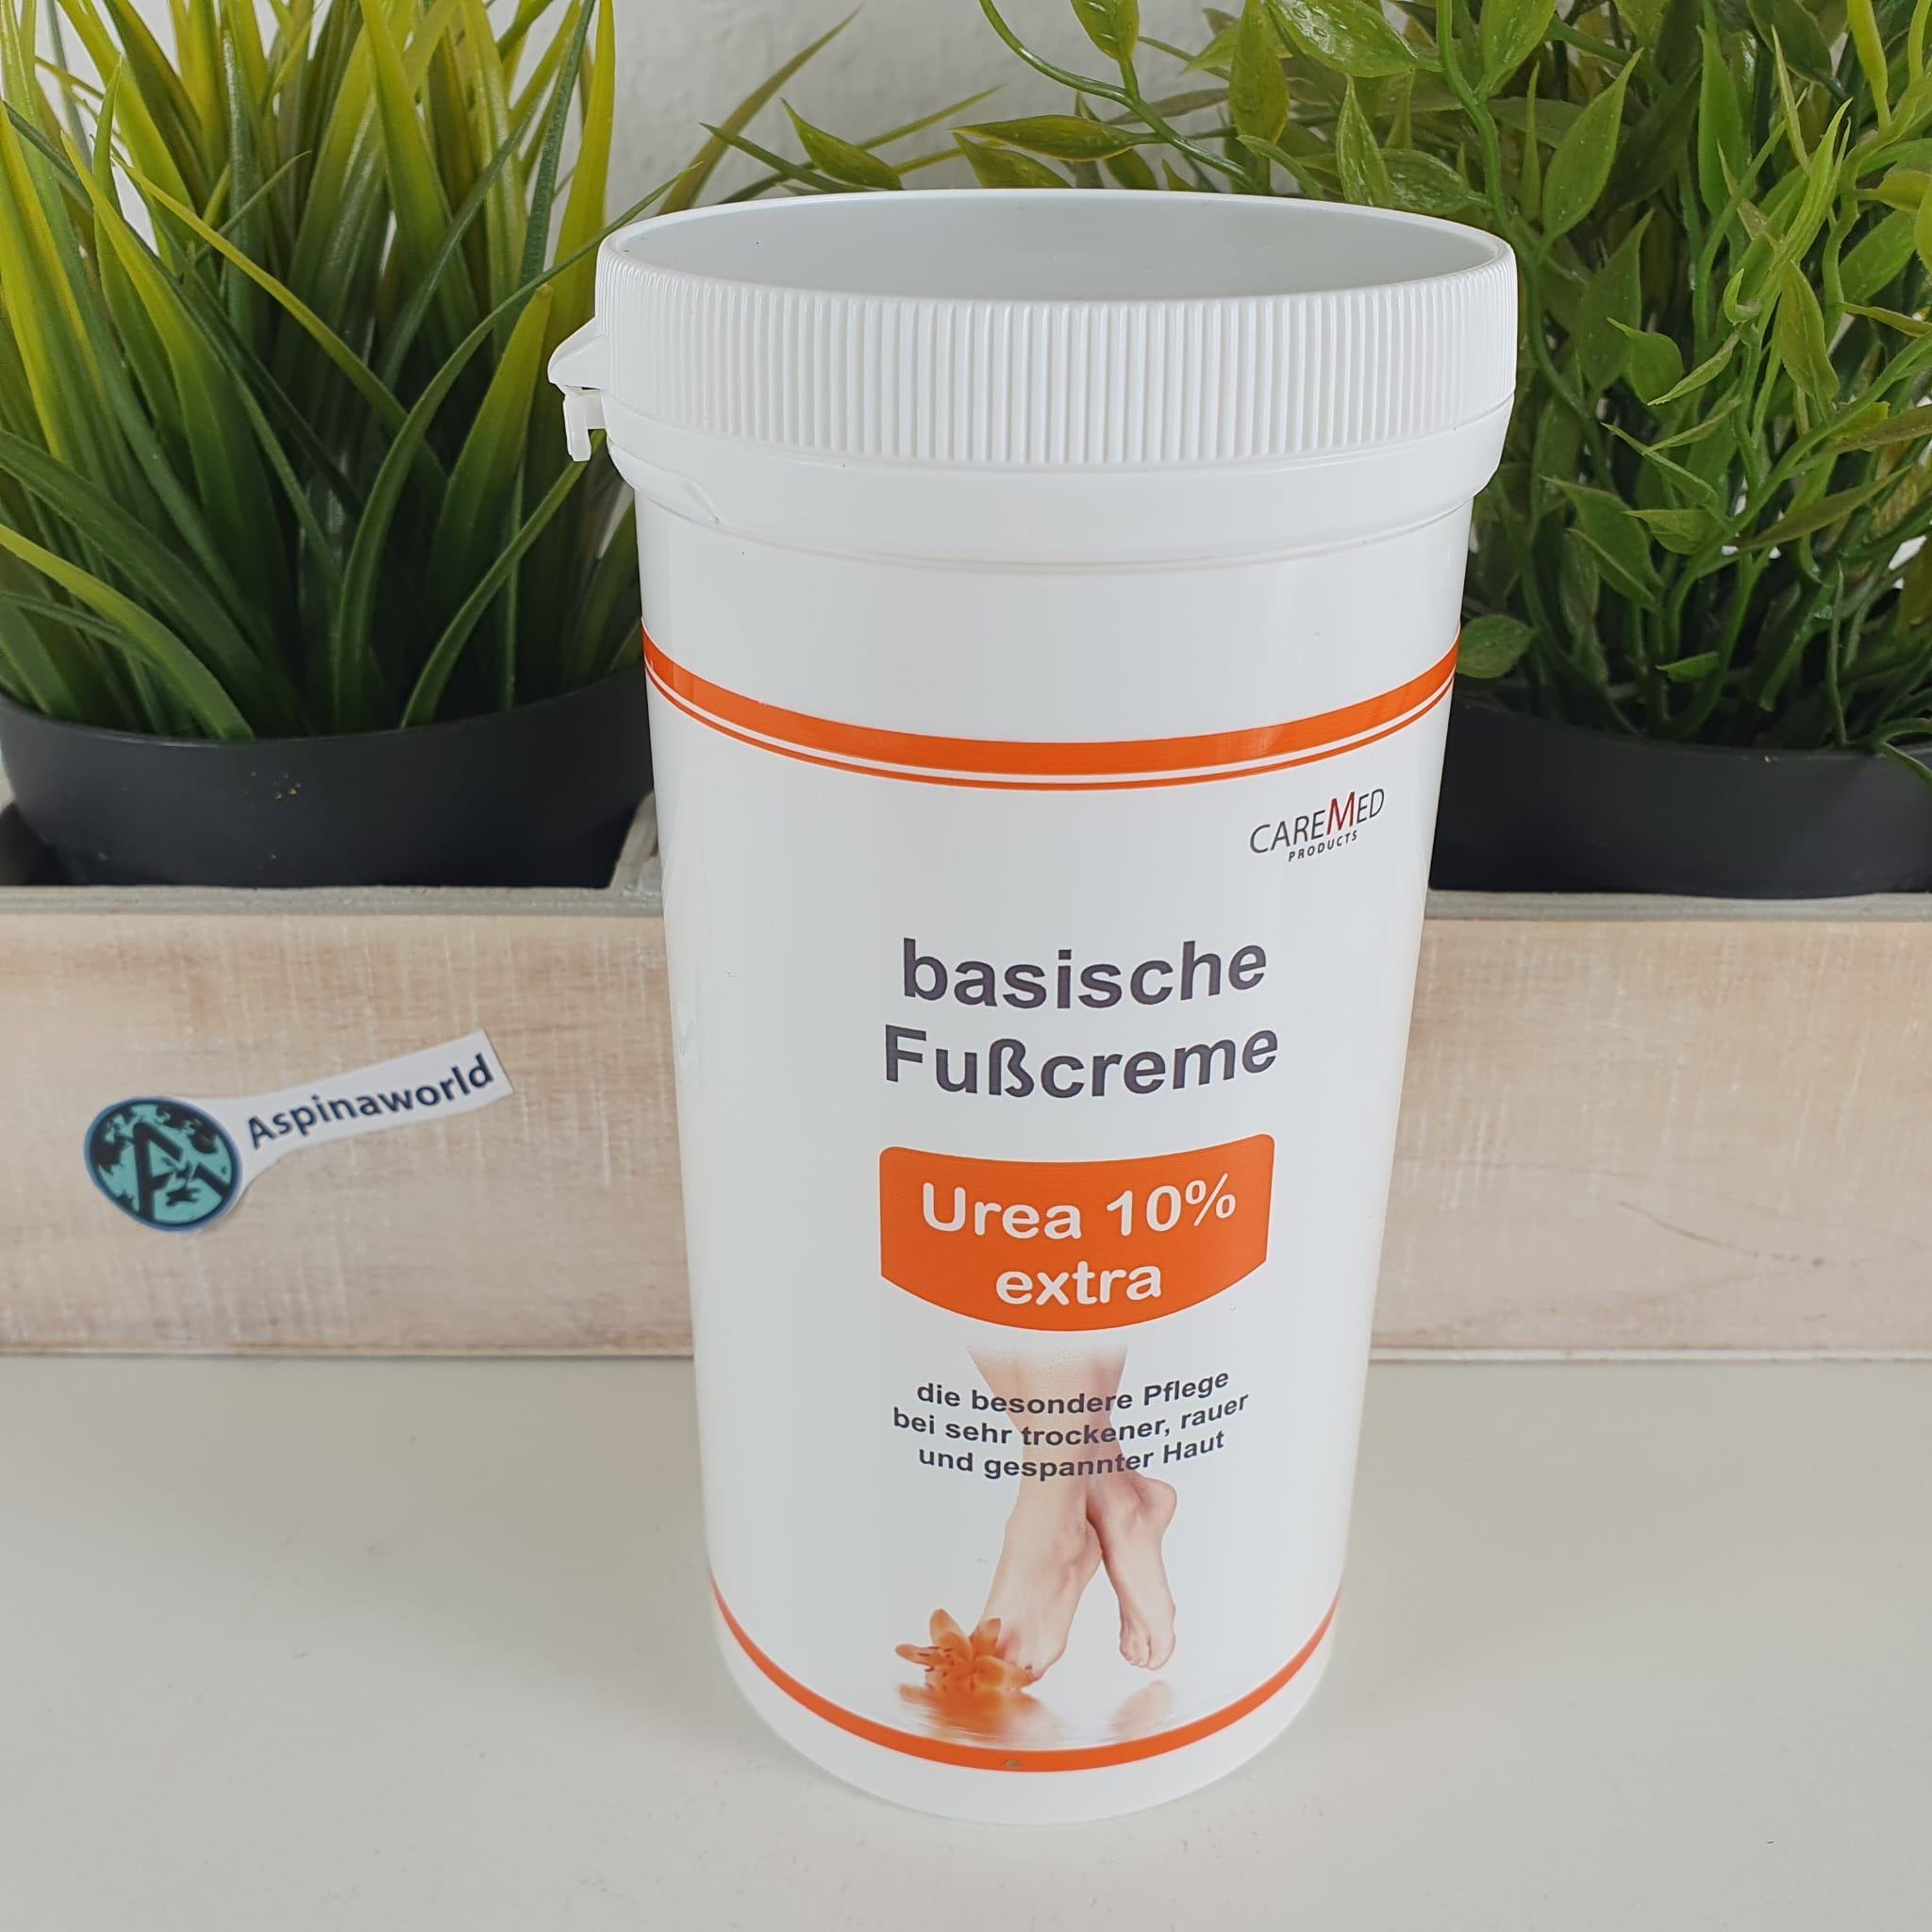 basische Fusscreme UREA 10% extra 450 ml mit Spender